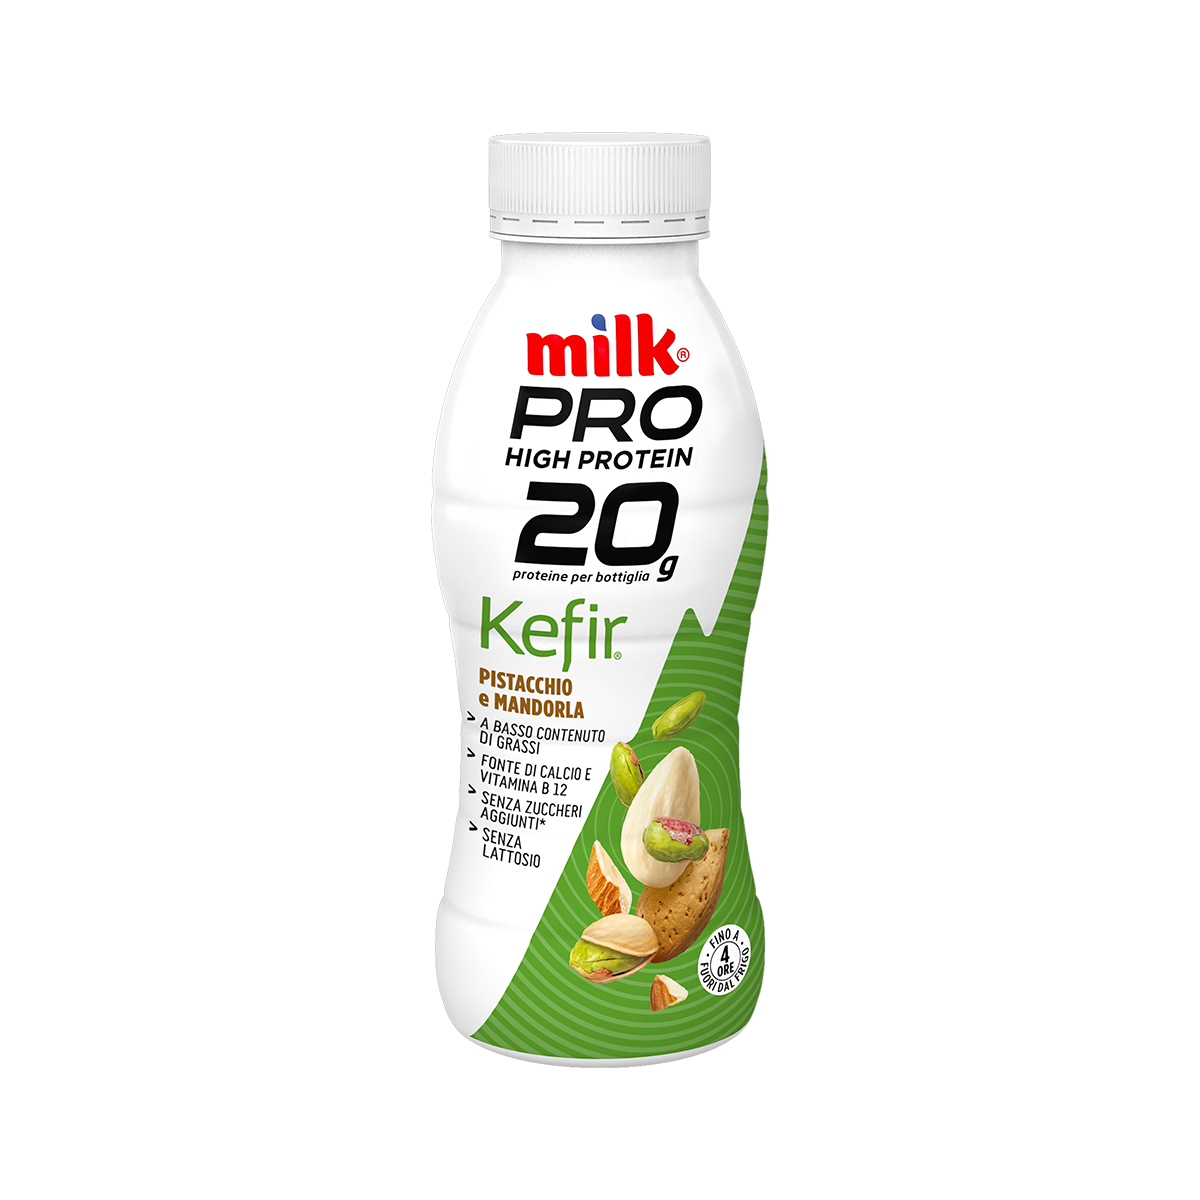 Milk Pro, High Protein Kefir Pistacchio e Mandorla 310g